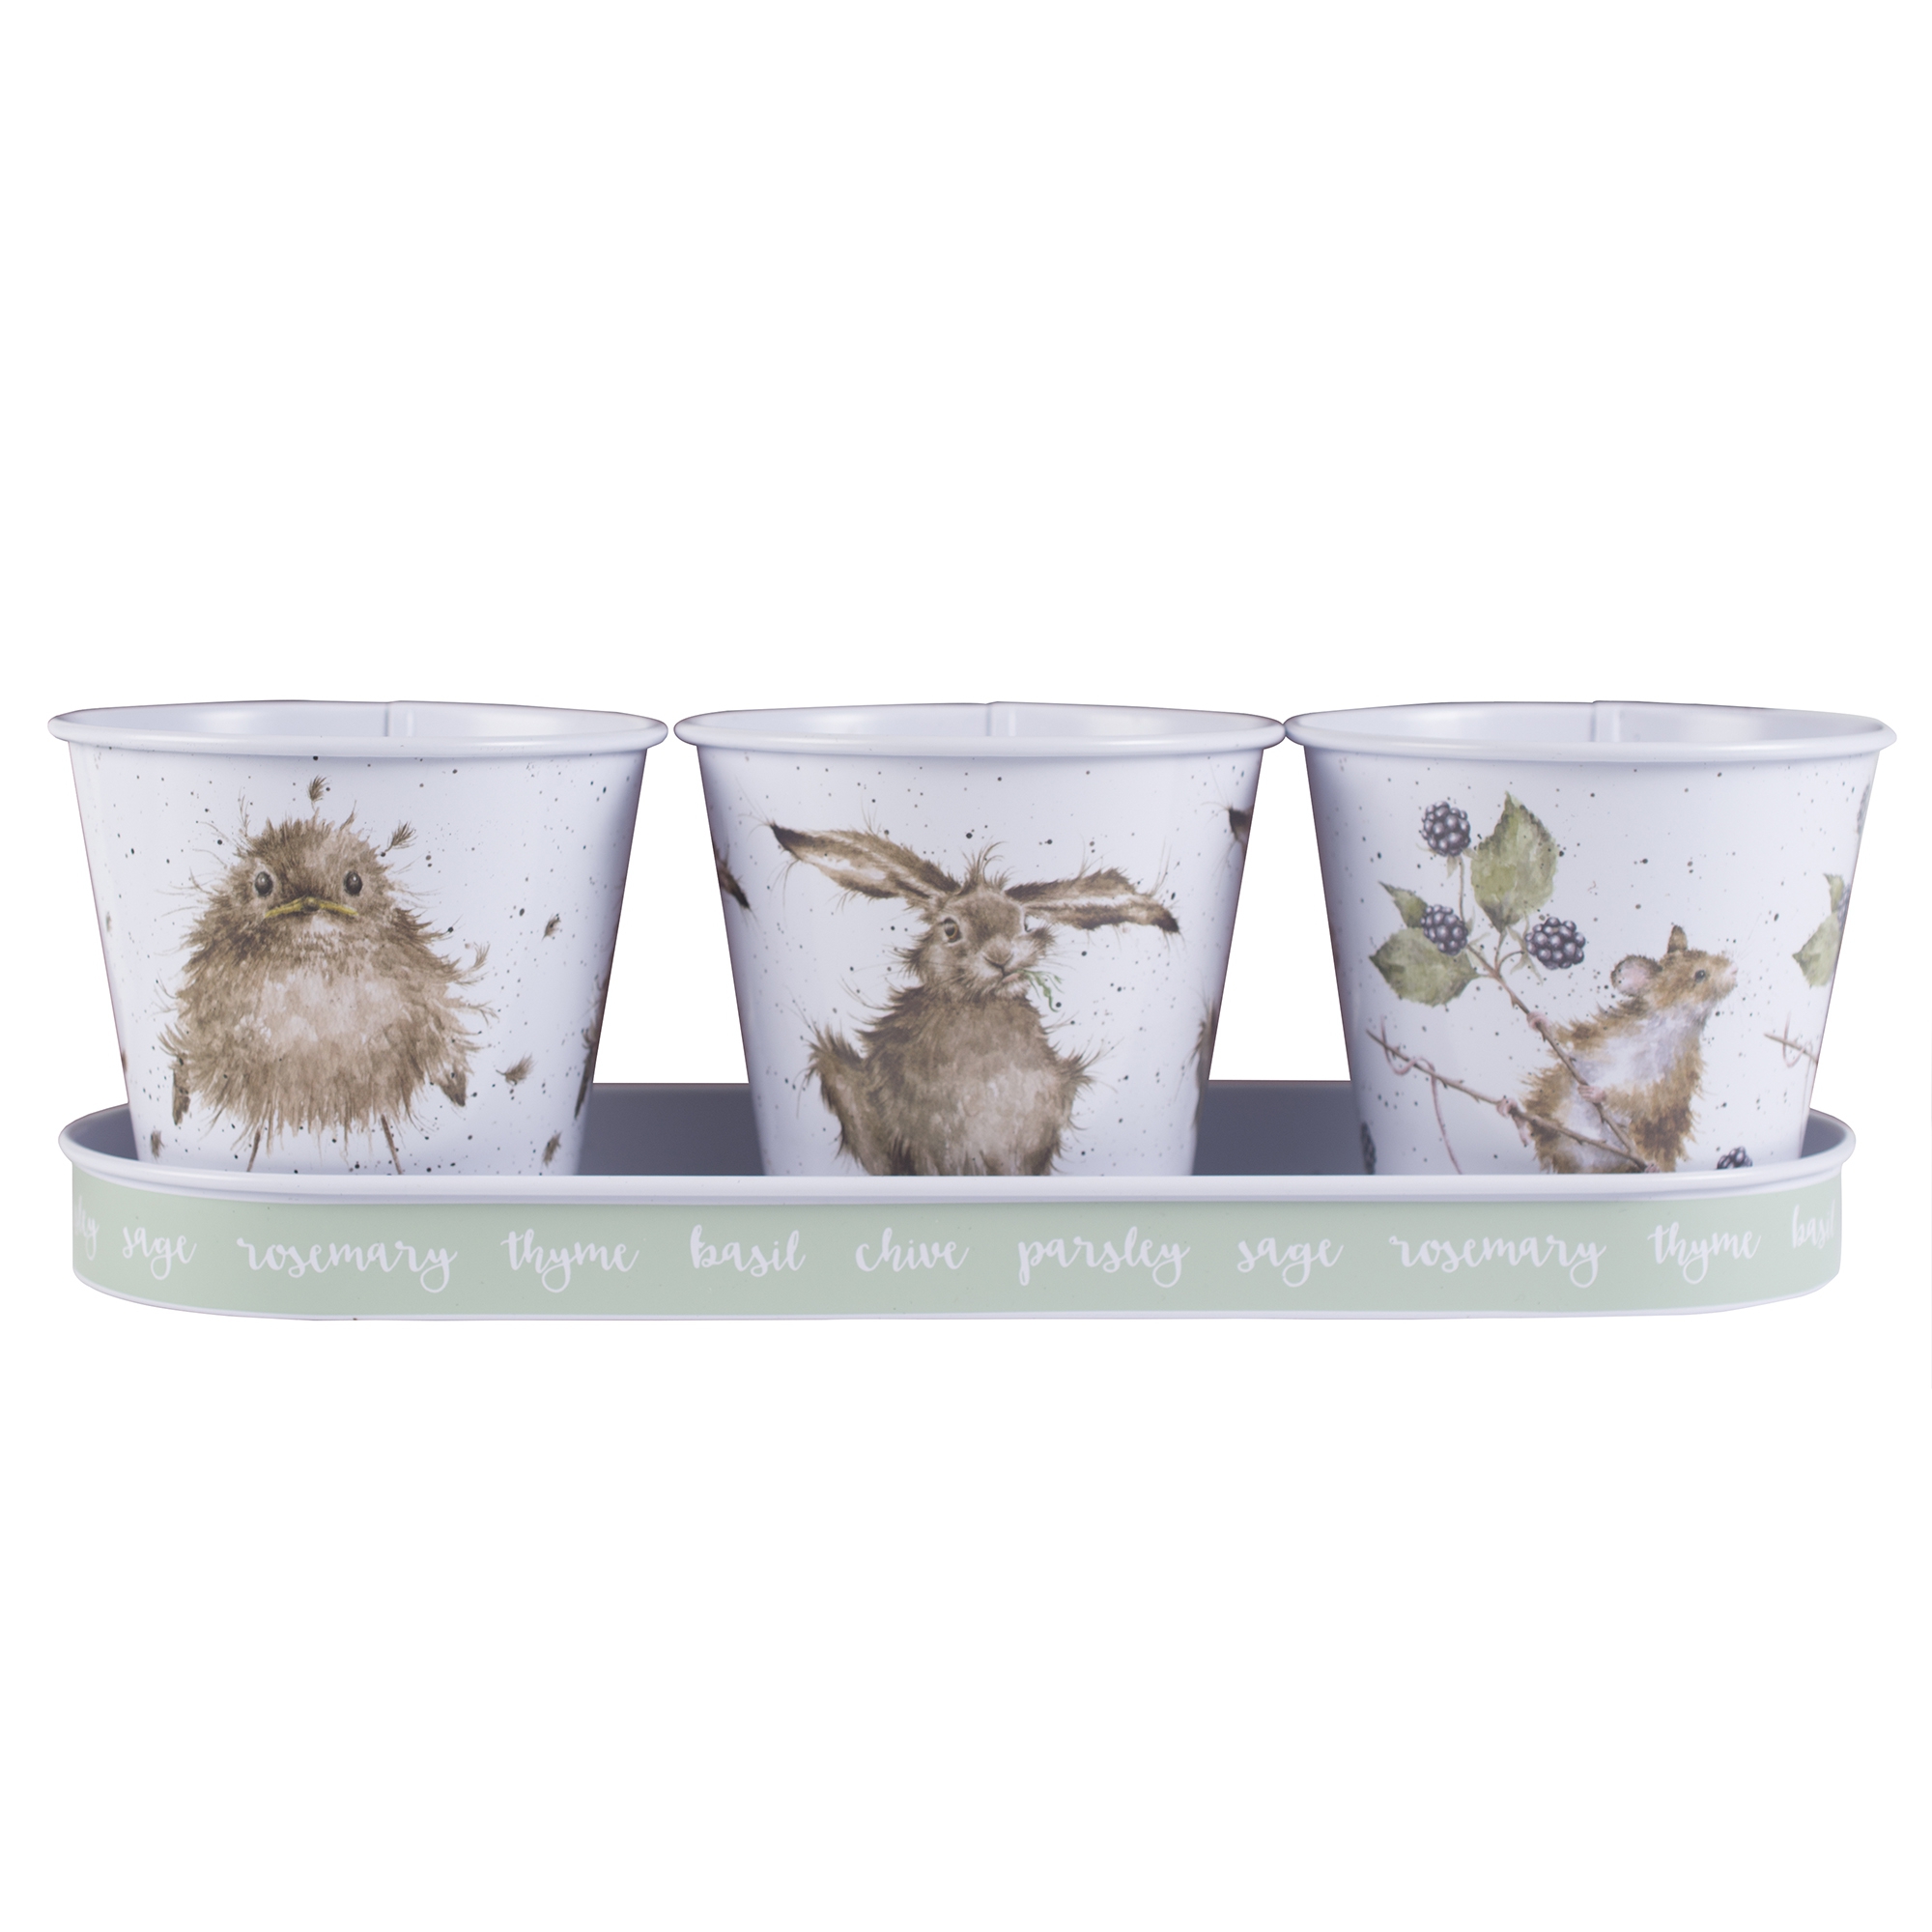 Oiseau - Lapin - Souris Pots à herbes avec plateau 330 x 110 x 25 Wrendale Designs